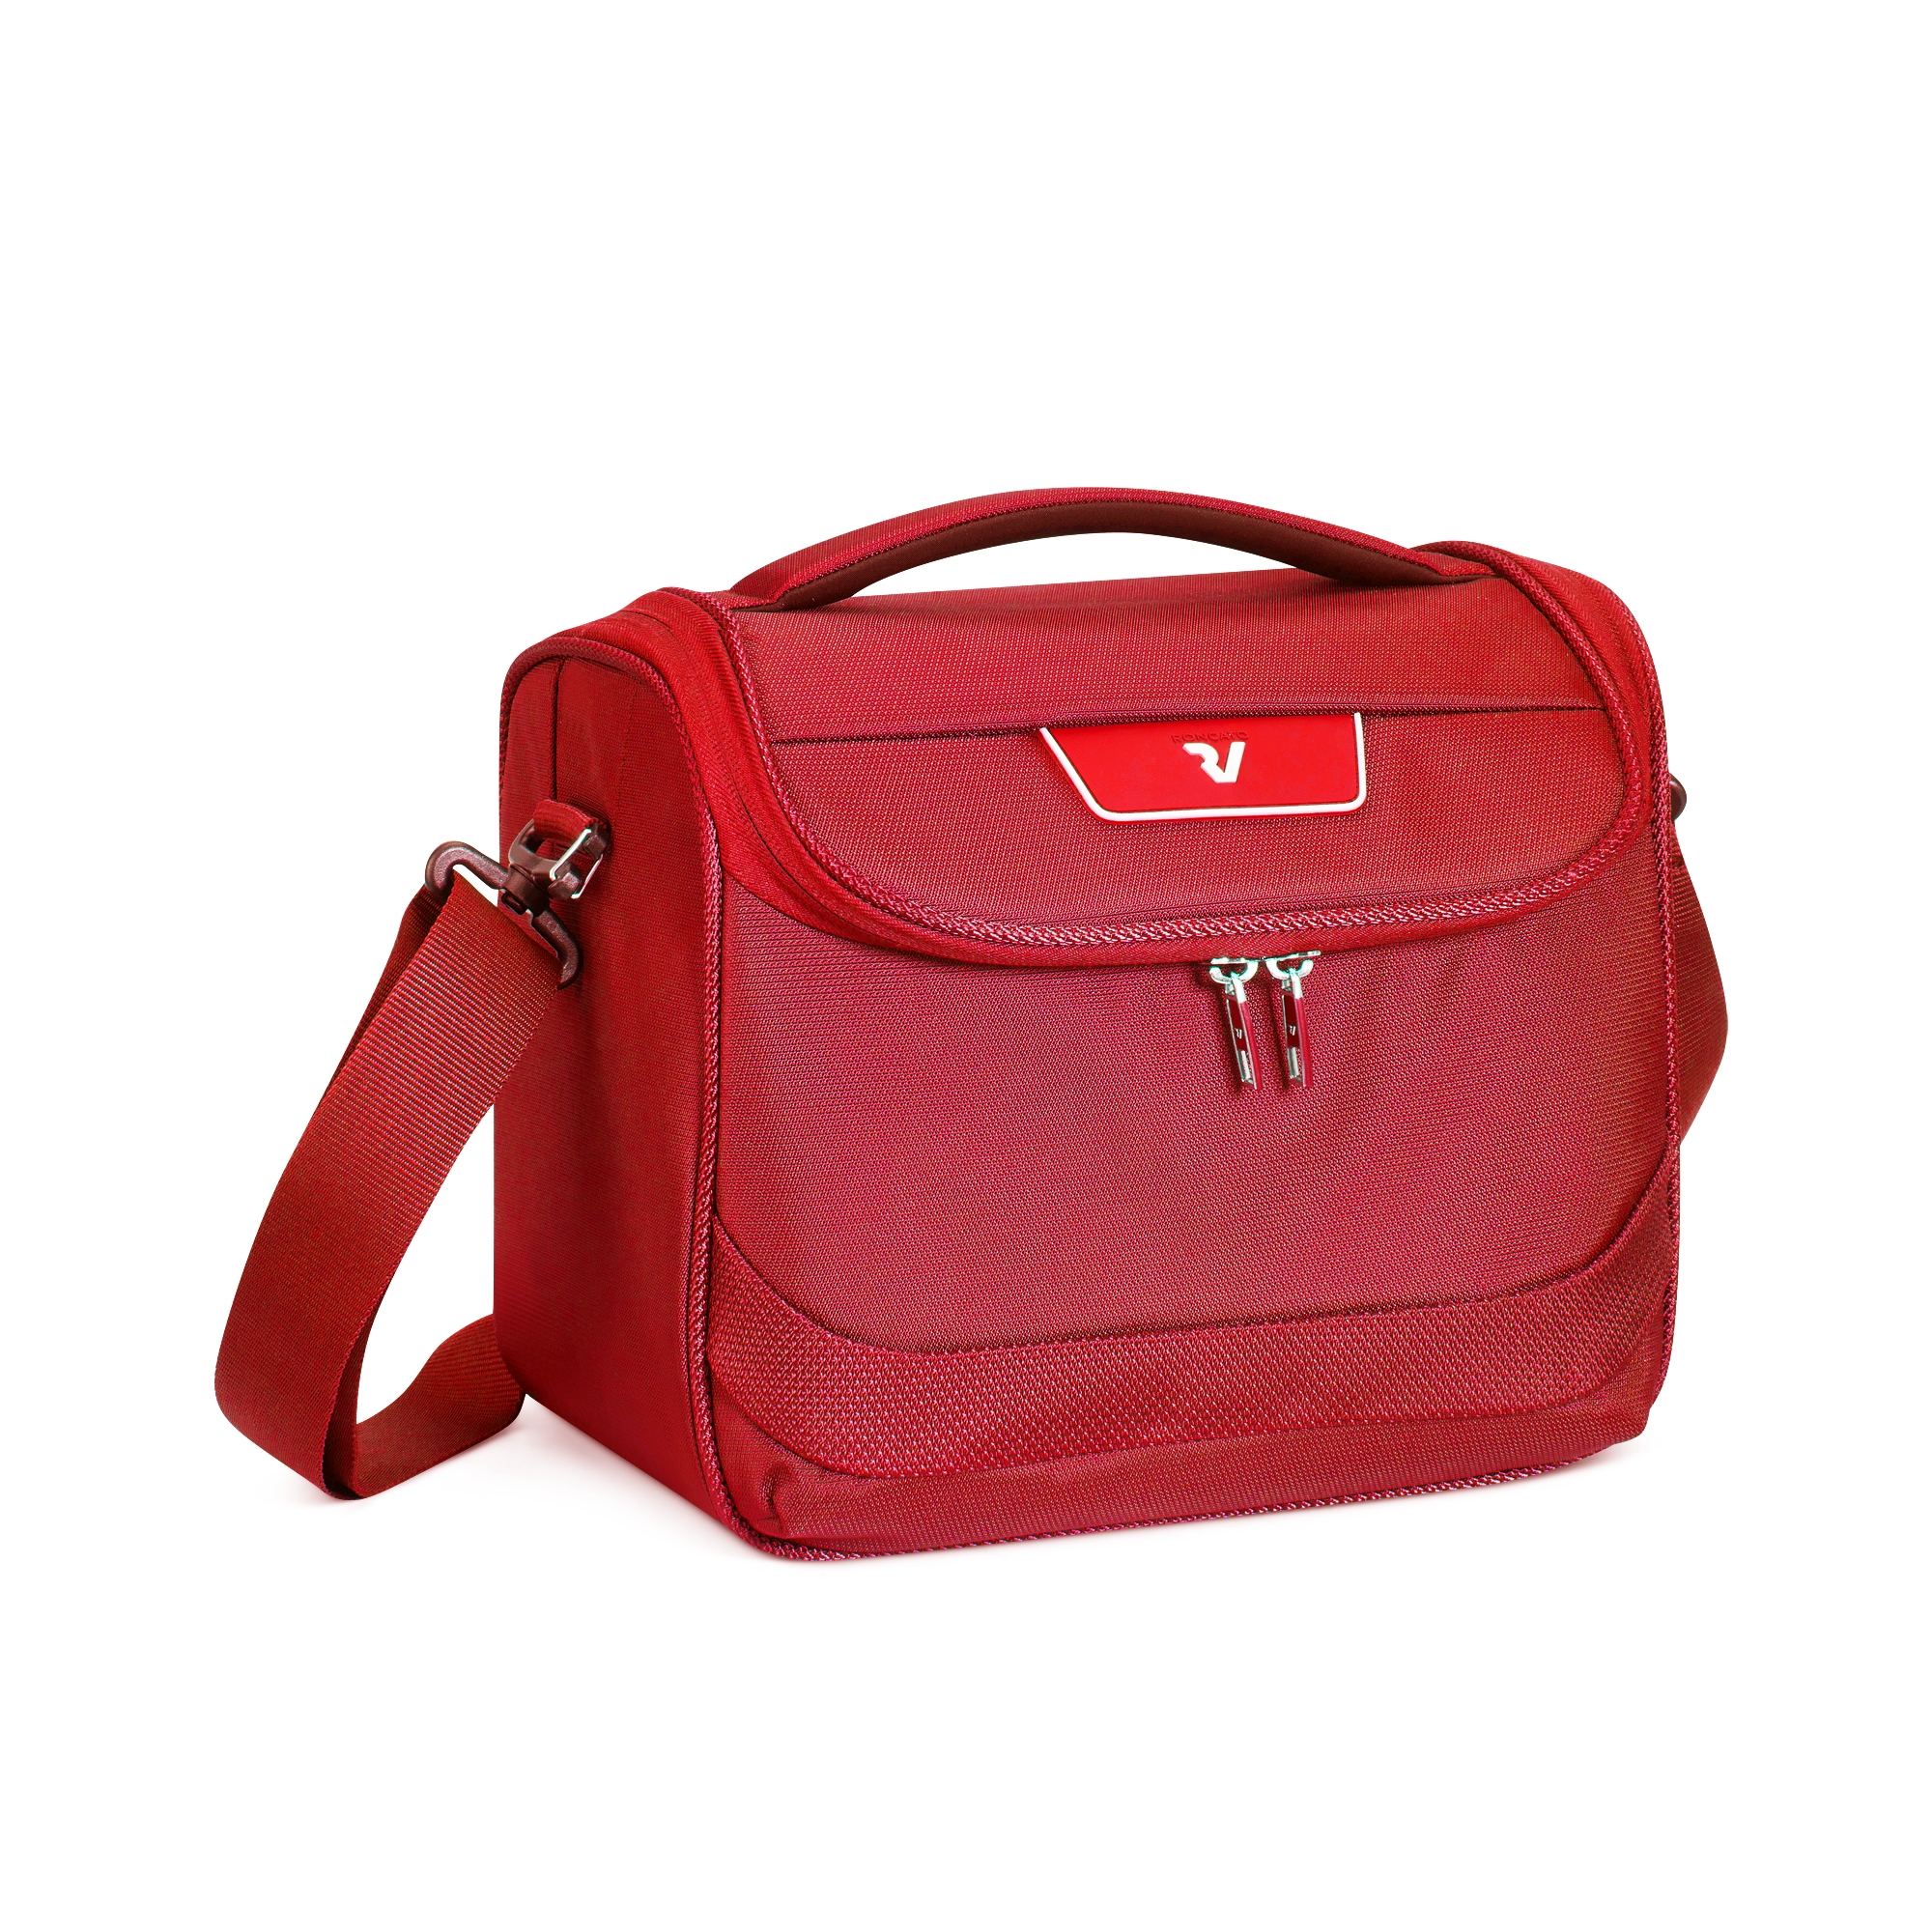 RONCATO Kosmetická taška Joy Červená, 29 x 26 x 27 (RV-41620809)